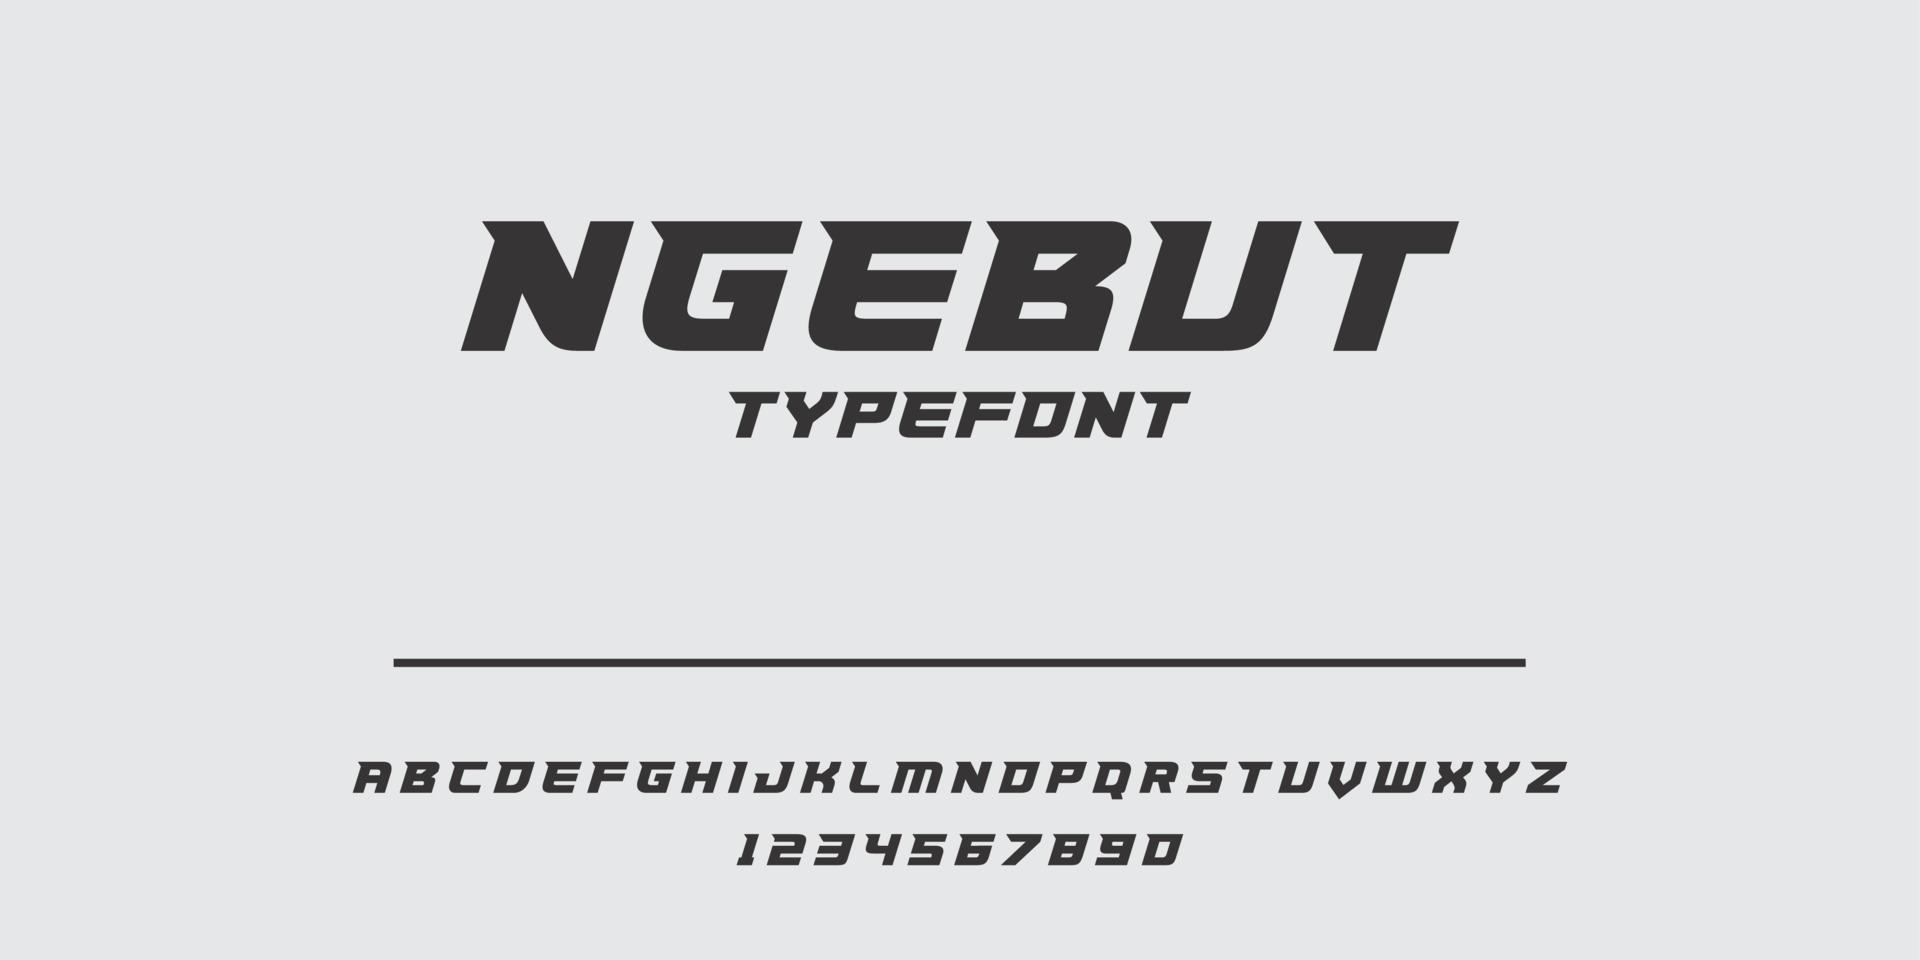 benutzerdefinierte Schriftart für das Automobillogo, der Name ist ngebut typefont vektor